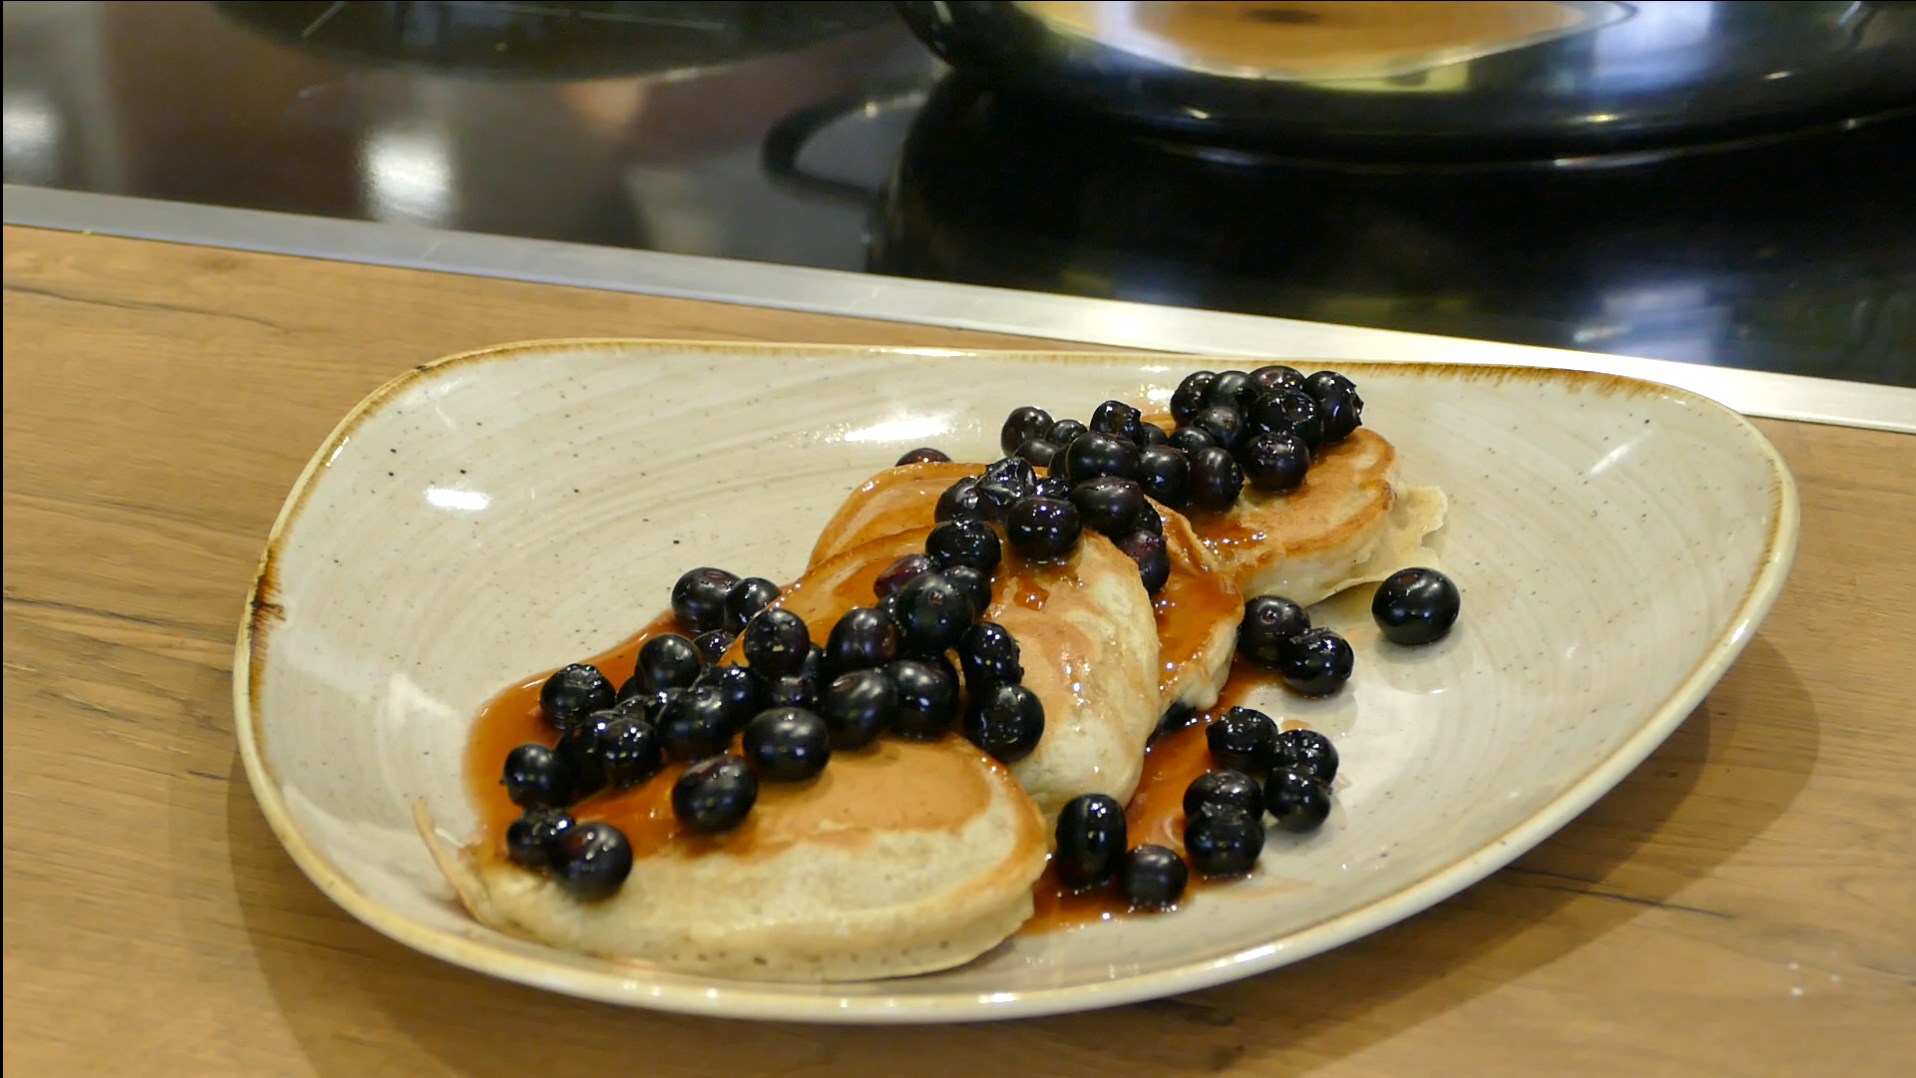 Pancakes sind mit Blaubeeren verziert auf einem cremefarbenem Teller mit goldenem Rand angerichtet, der auf einem hellen Holztisch steht.